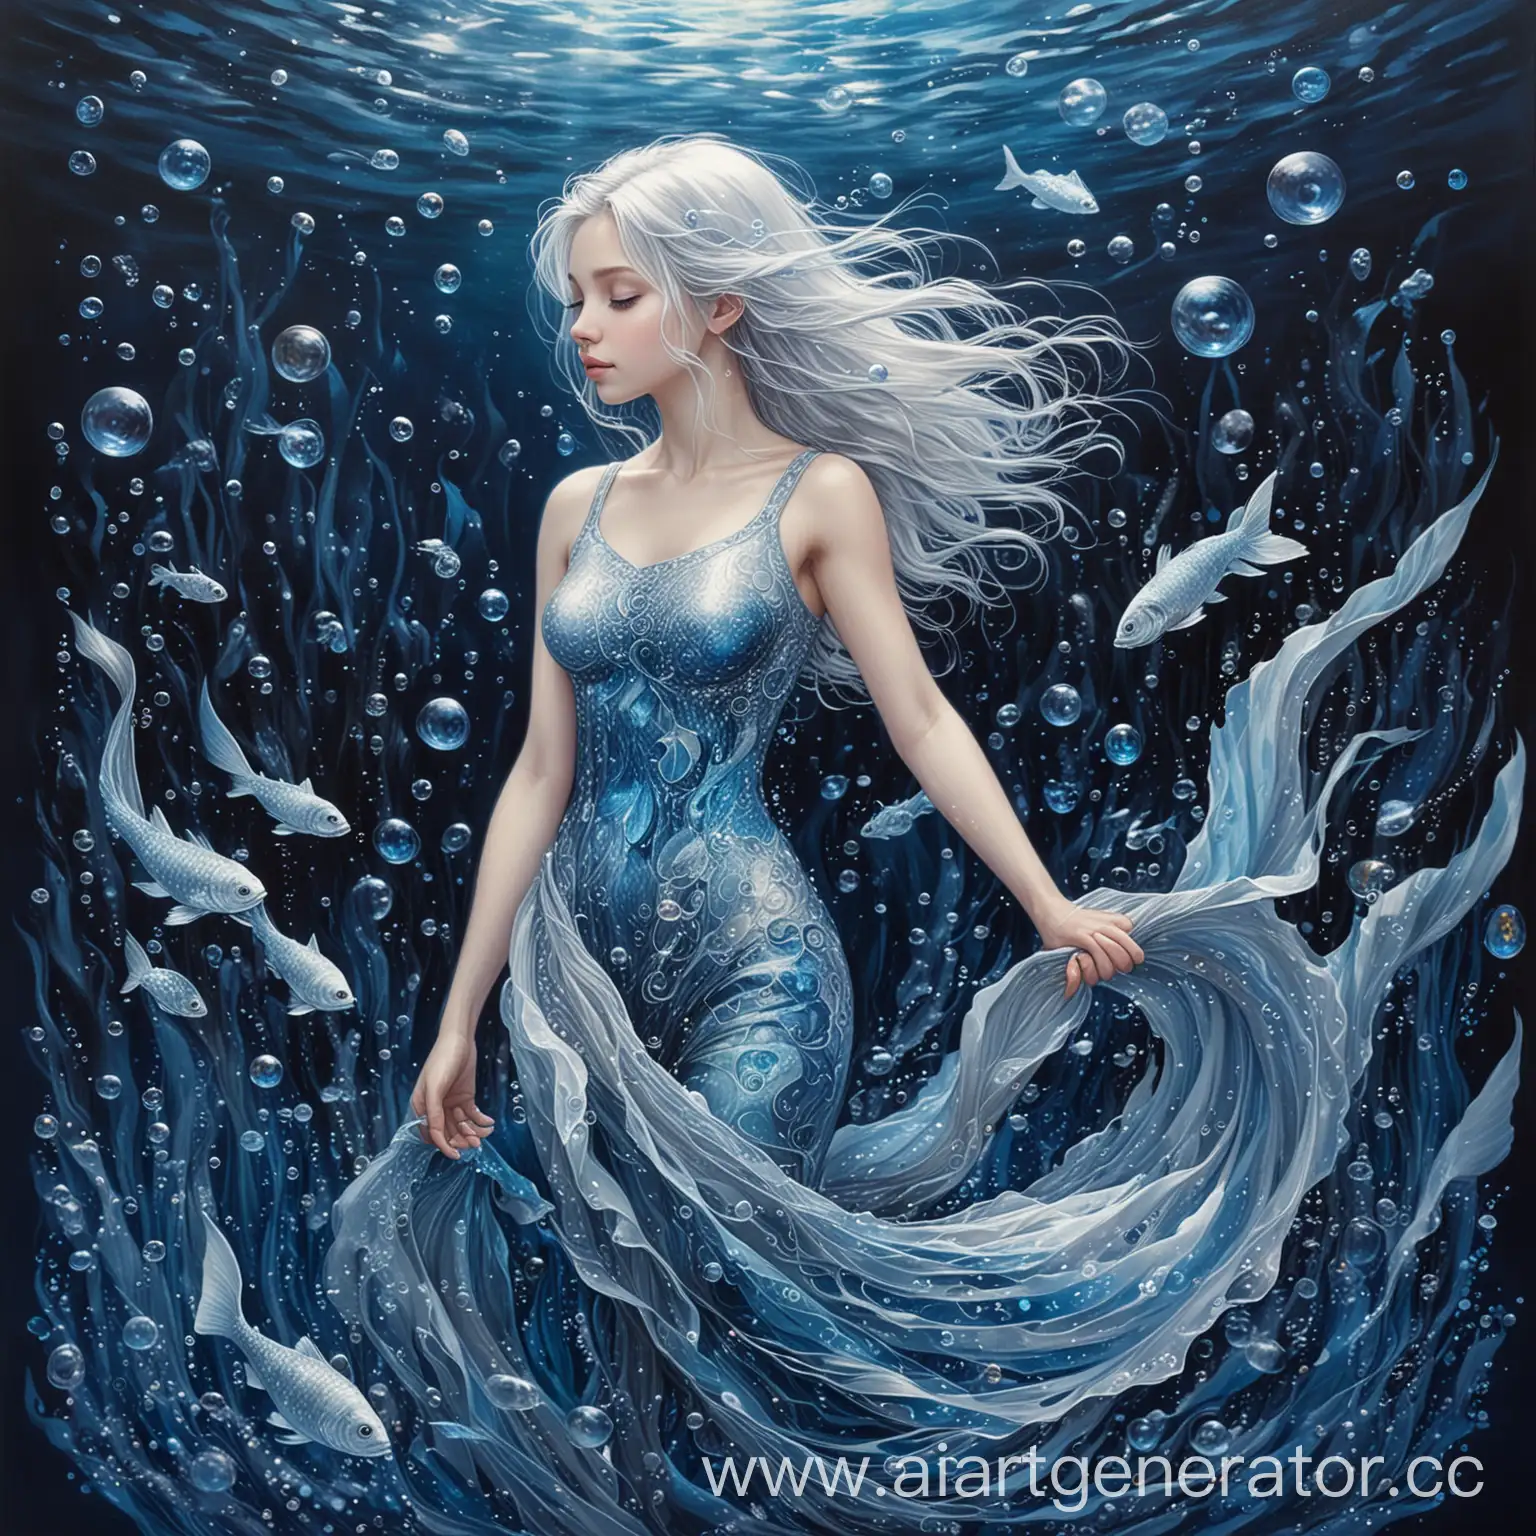 银发少女悠游深蓝梦境，鱼尾微光说海洋故事，蓝瞳如镜映深邃秘密，气泡轻舞携无言梦想，探索每一笔梦与秘境，画出全身